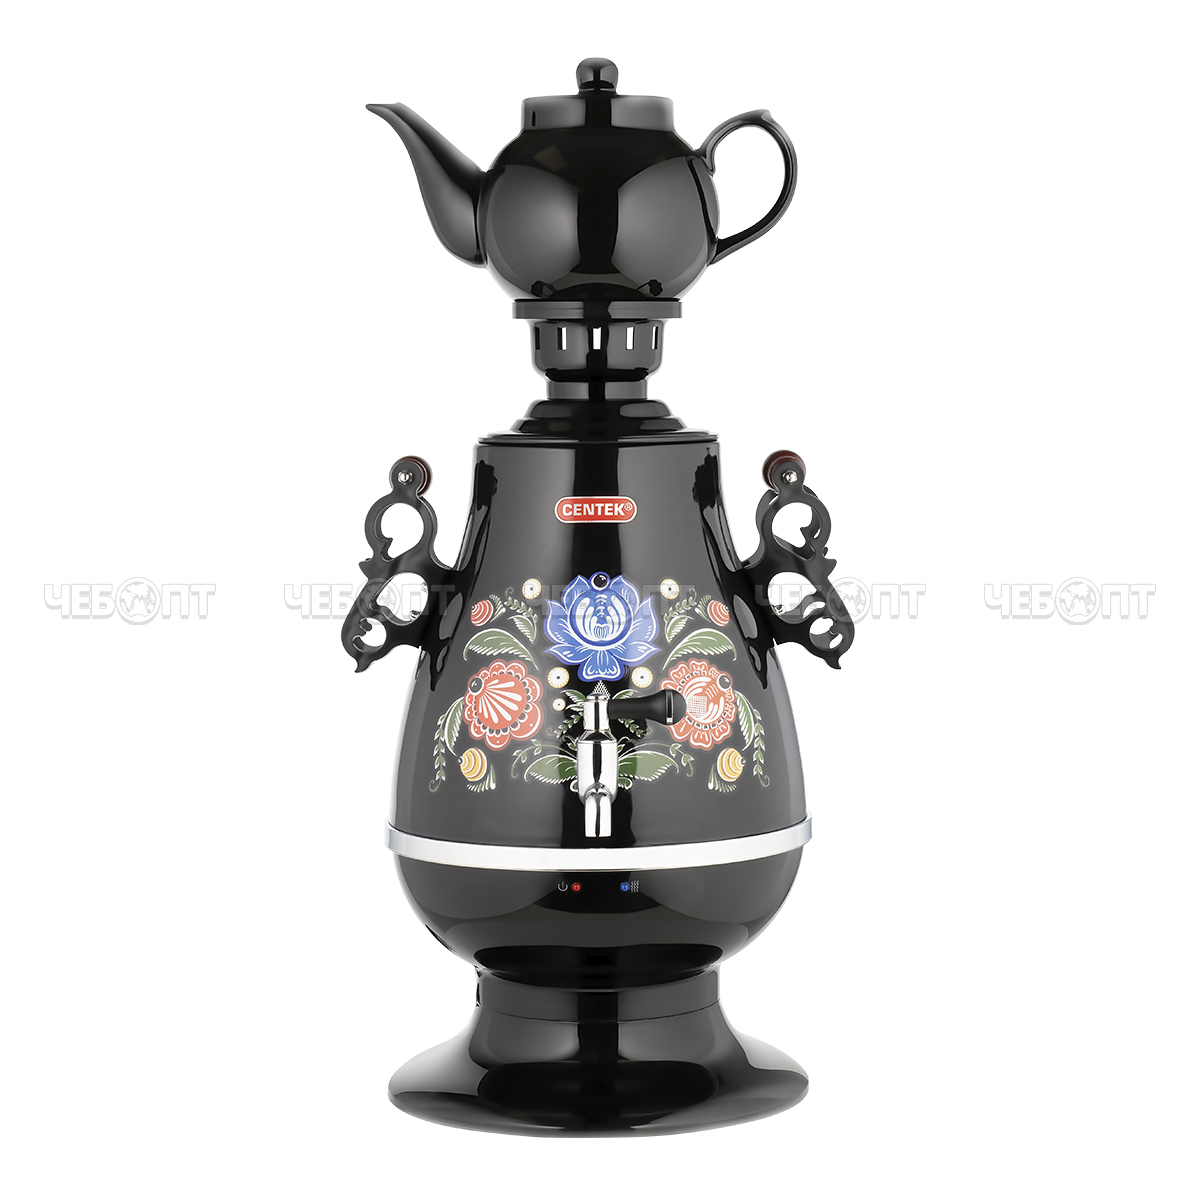 Чайник-самовар CENTEK CT-0091В, 0092 BLACK корпус металл 4 л, керамич. заварочный чайник, поддержание темп, LED индикатор, мощн. 2300 Вт [4]. ЧЕБОПТ.